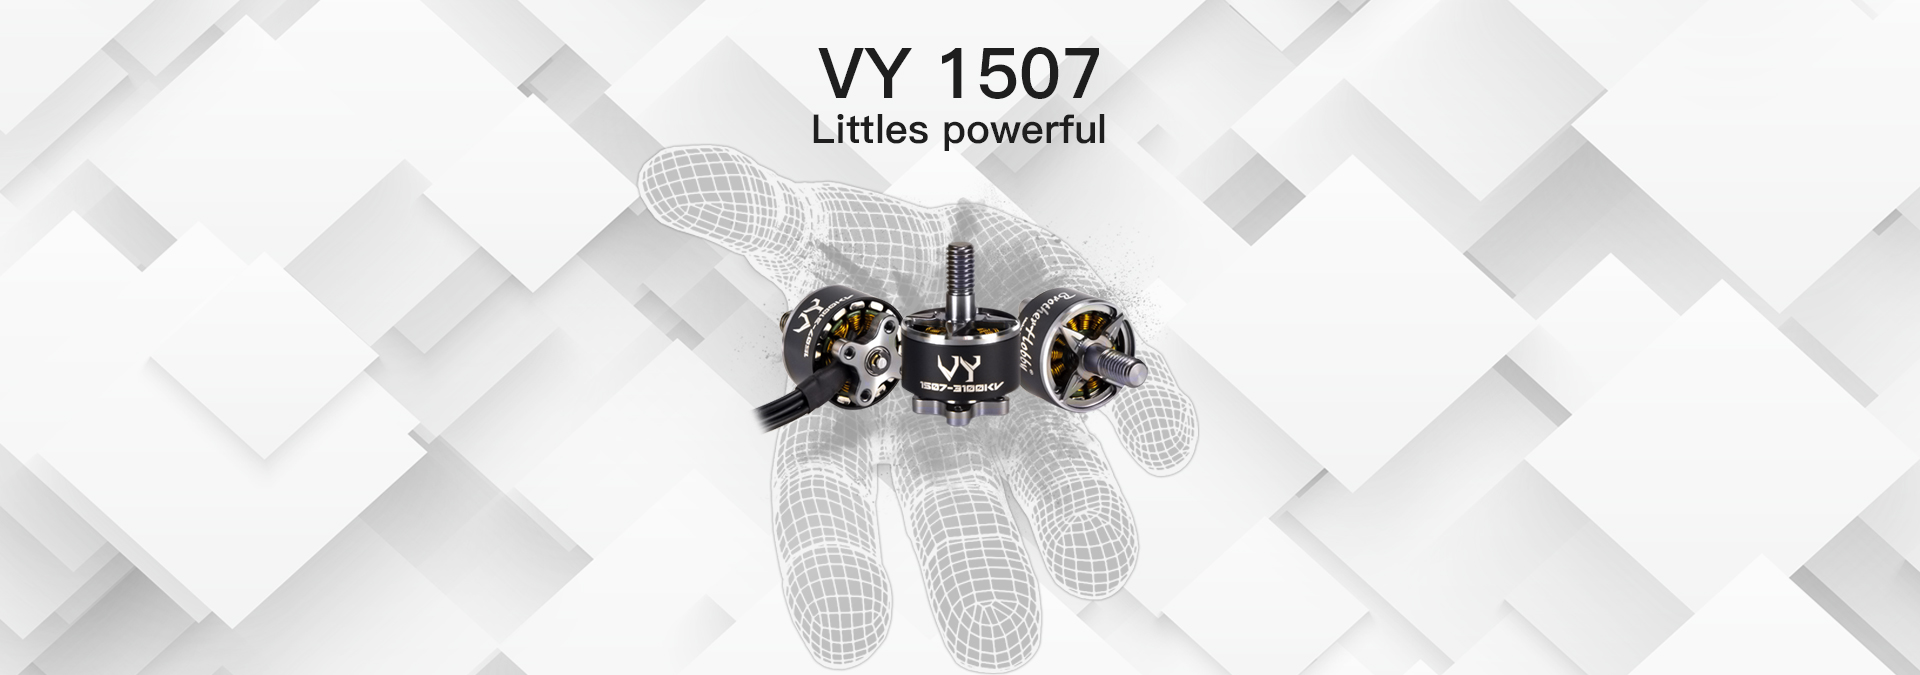 VY 1507 Motor